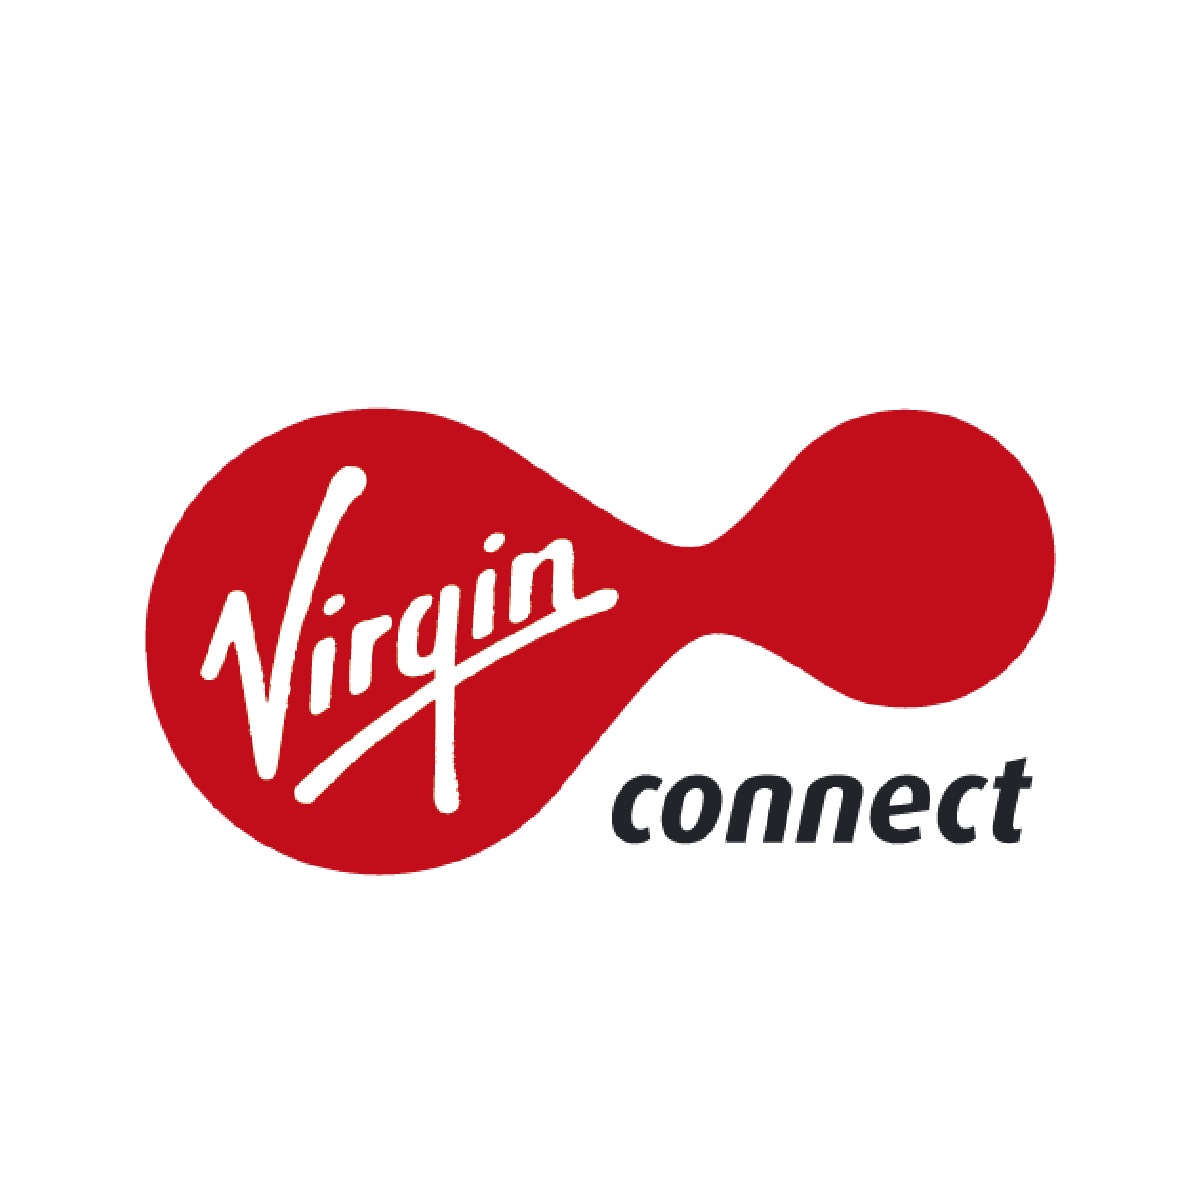 Connect russia. Virgin connect. Virgin connect Нижний Новгород. Логотип Virgin. Virgin connect, королёв.